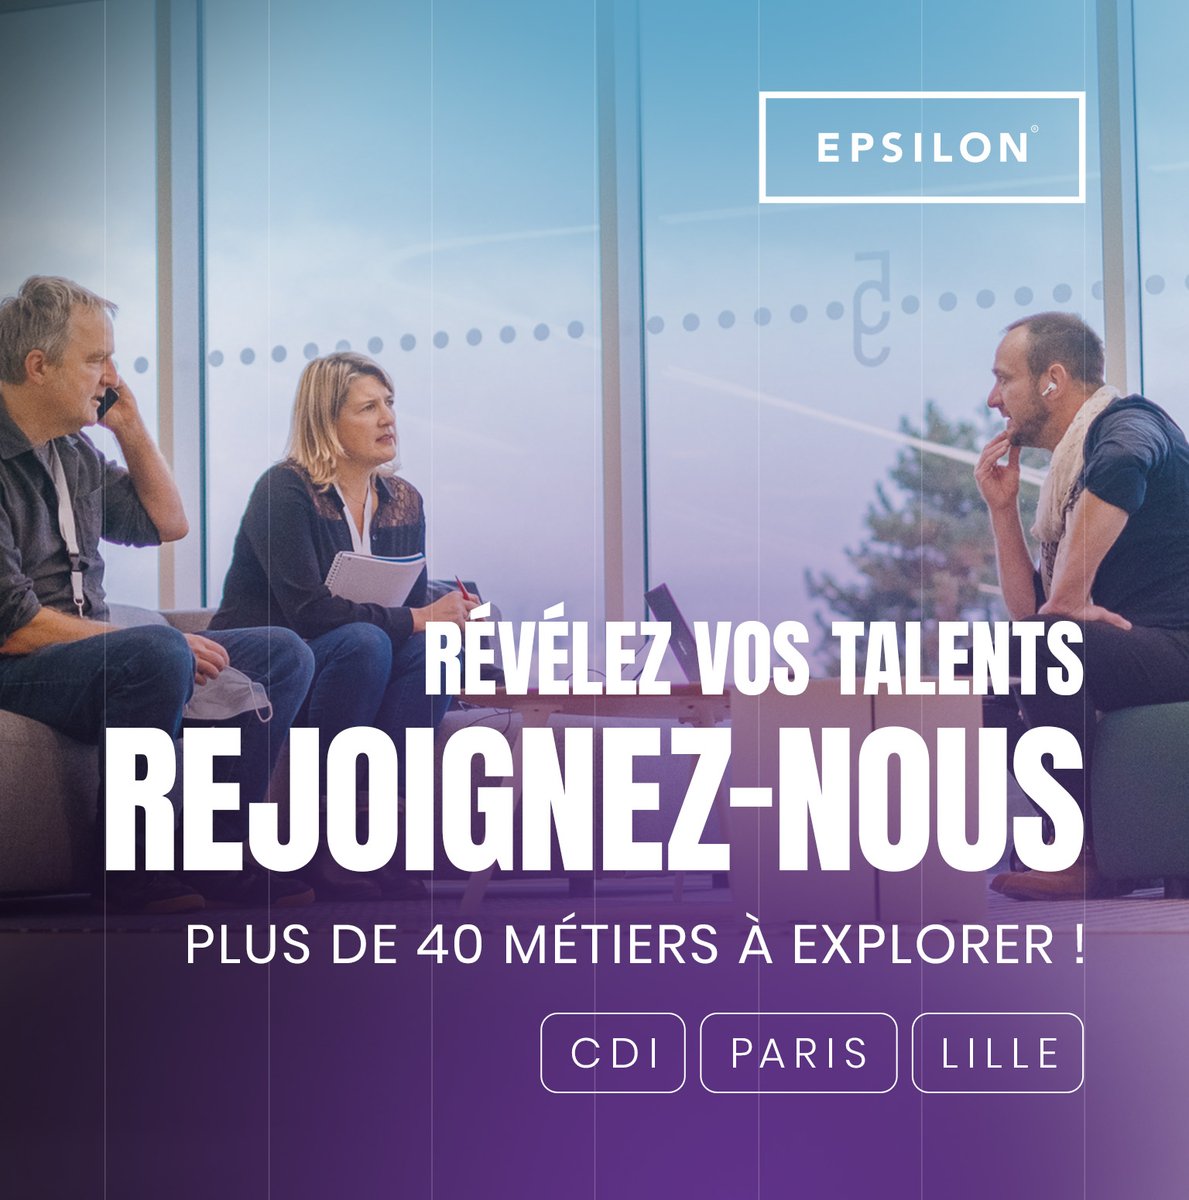 🚨 #Recrutement
A la recherche d'une opportunité dans le domaine de la #Data & du #Marketing ?
Rejoignez nos équipes sur #Lille et #Paris !
Retrouvez toutes nos offres #DataScience, #MarketingDigital & #CRM sur @wttj_fr
📷 ow.ly/yOei50NiETt
#icicarecrute #CDI #WorkAtEpsilon